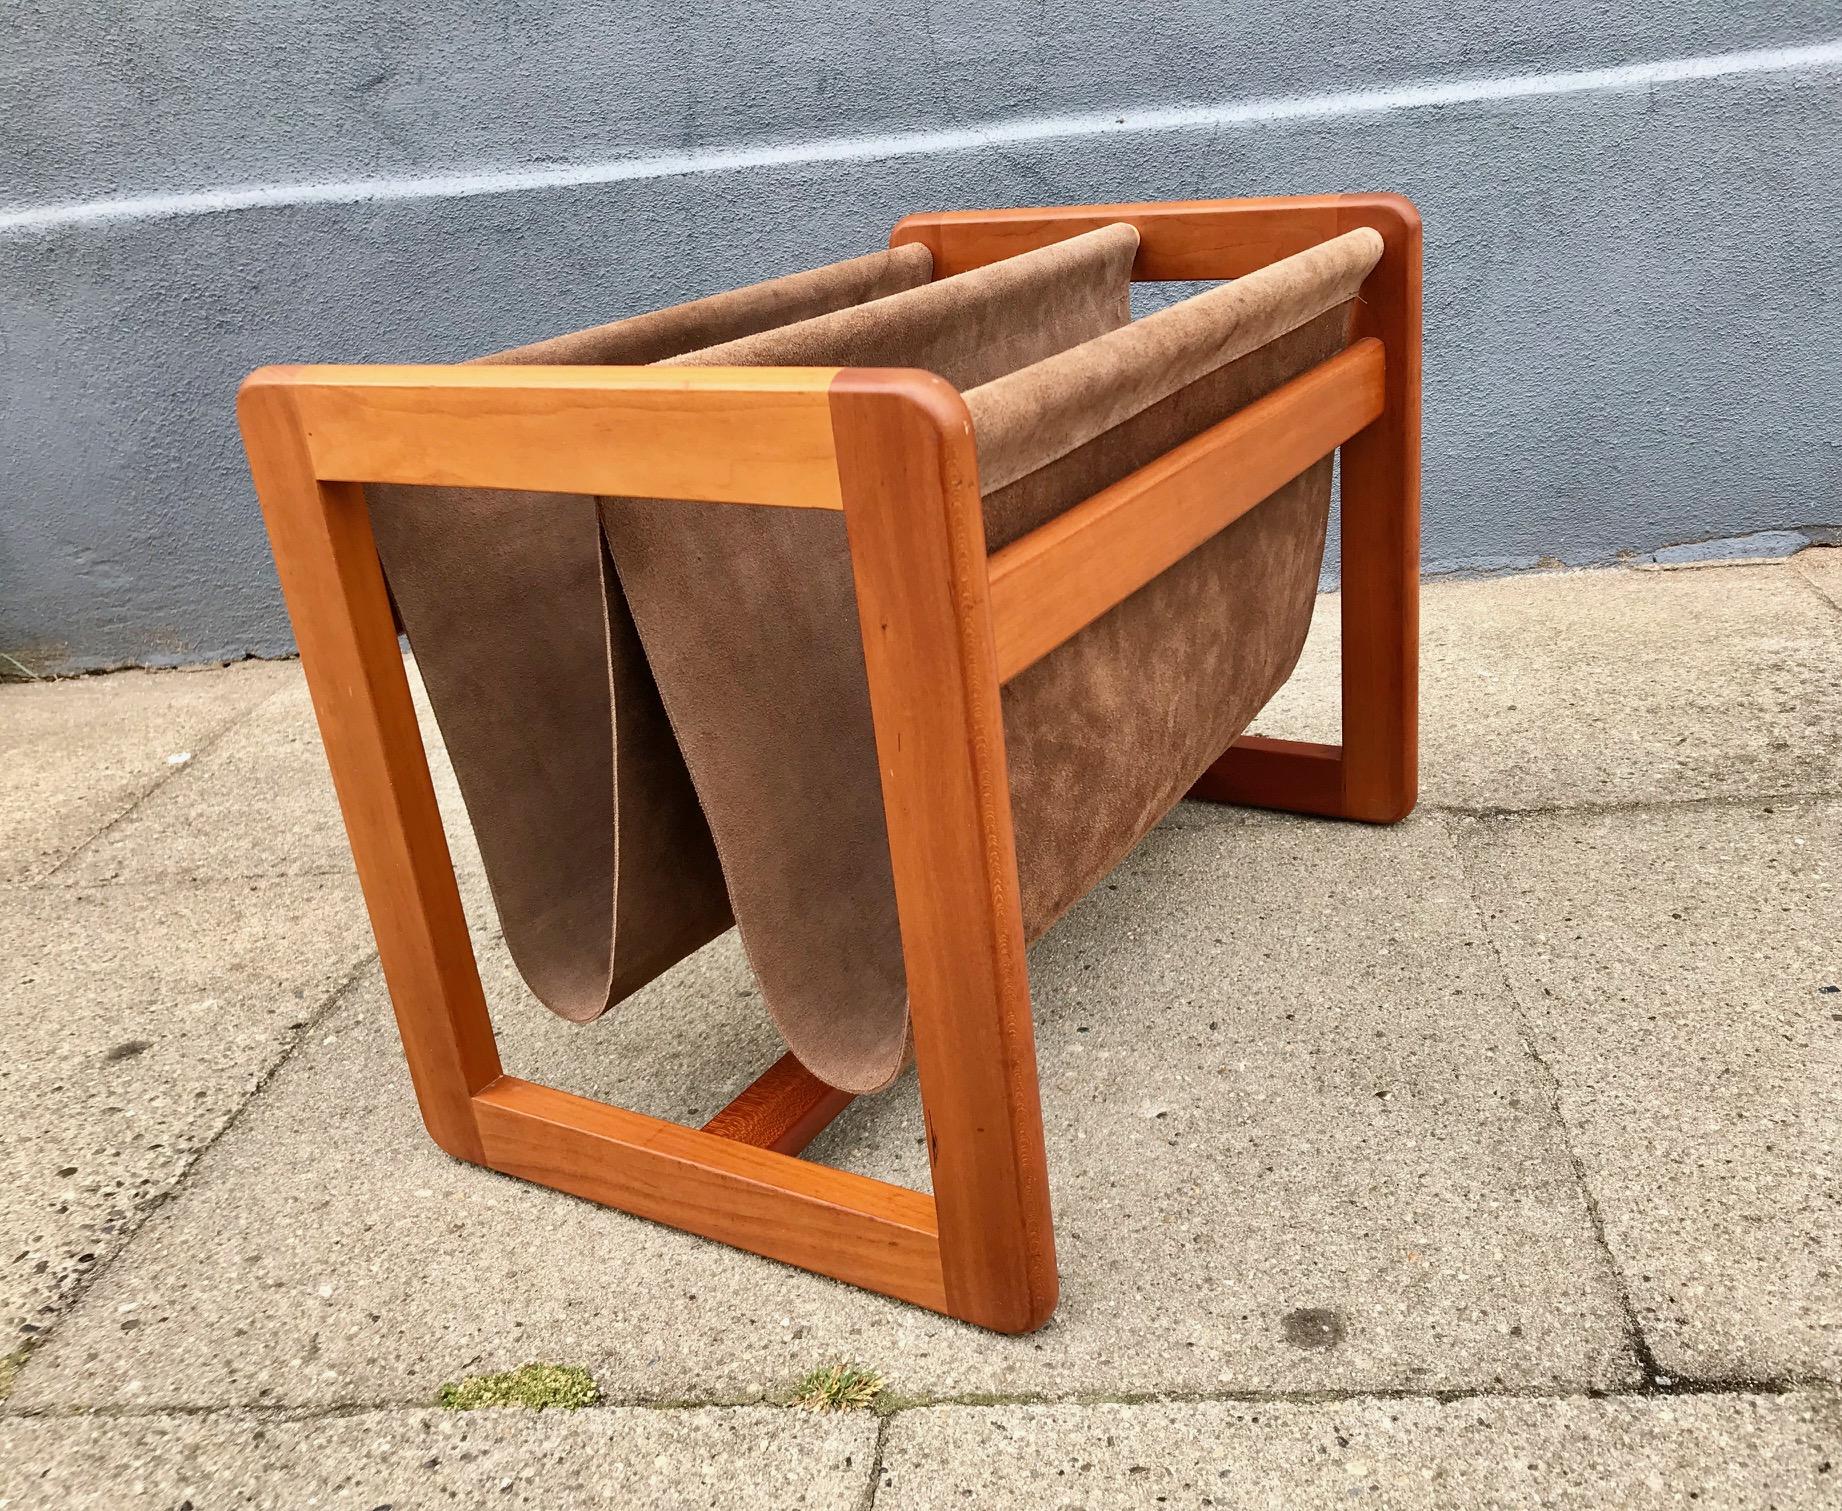 Magazine holder designed by Danish Aksel Kjersgaard
in the 1960s. Dual brown suede leather cradle slings. Solid teak frame. Branded 